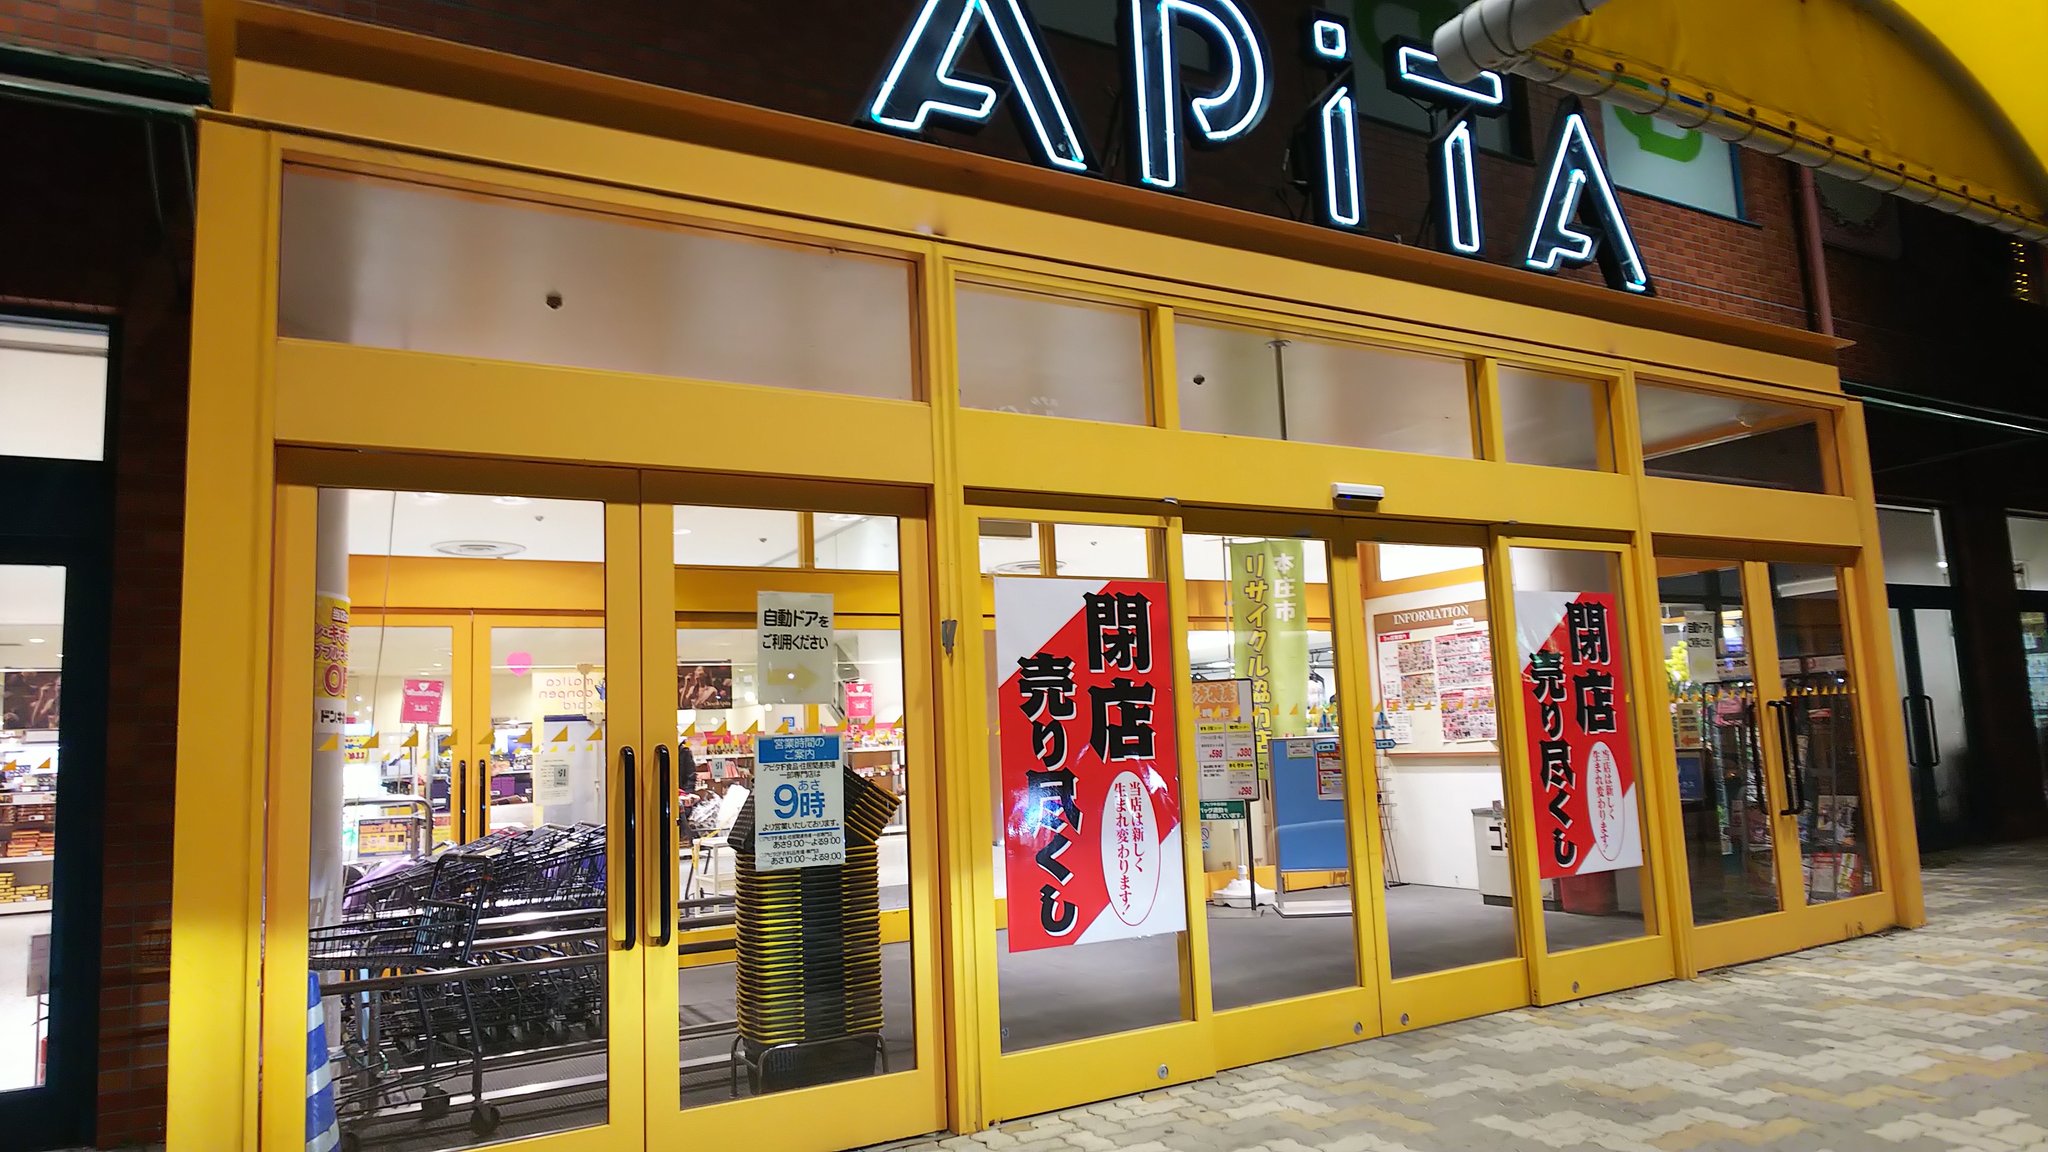 本庄 閉店 アピタ アピタピアゴ閉店の理由と、閉店店舗一覧と今後の閉店予定店舗一覧